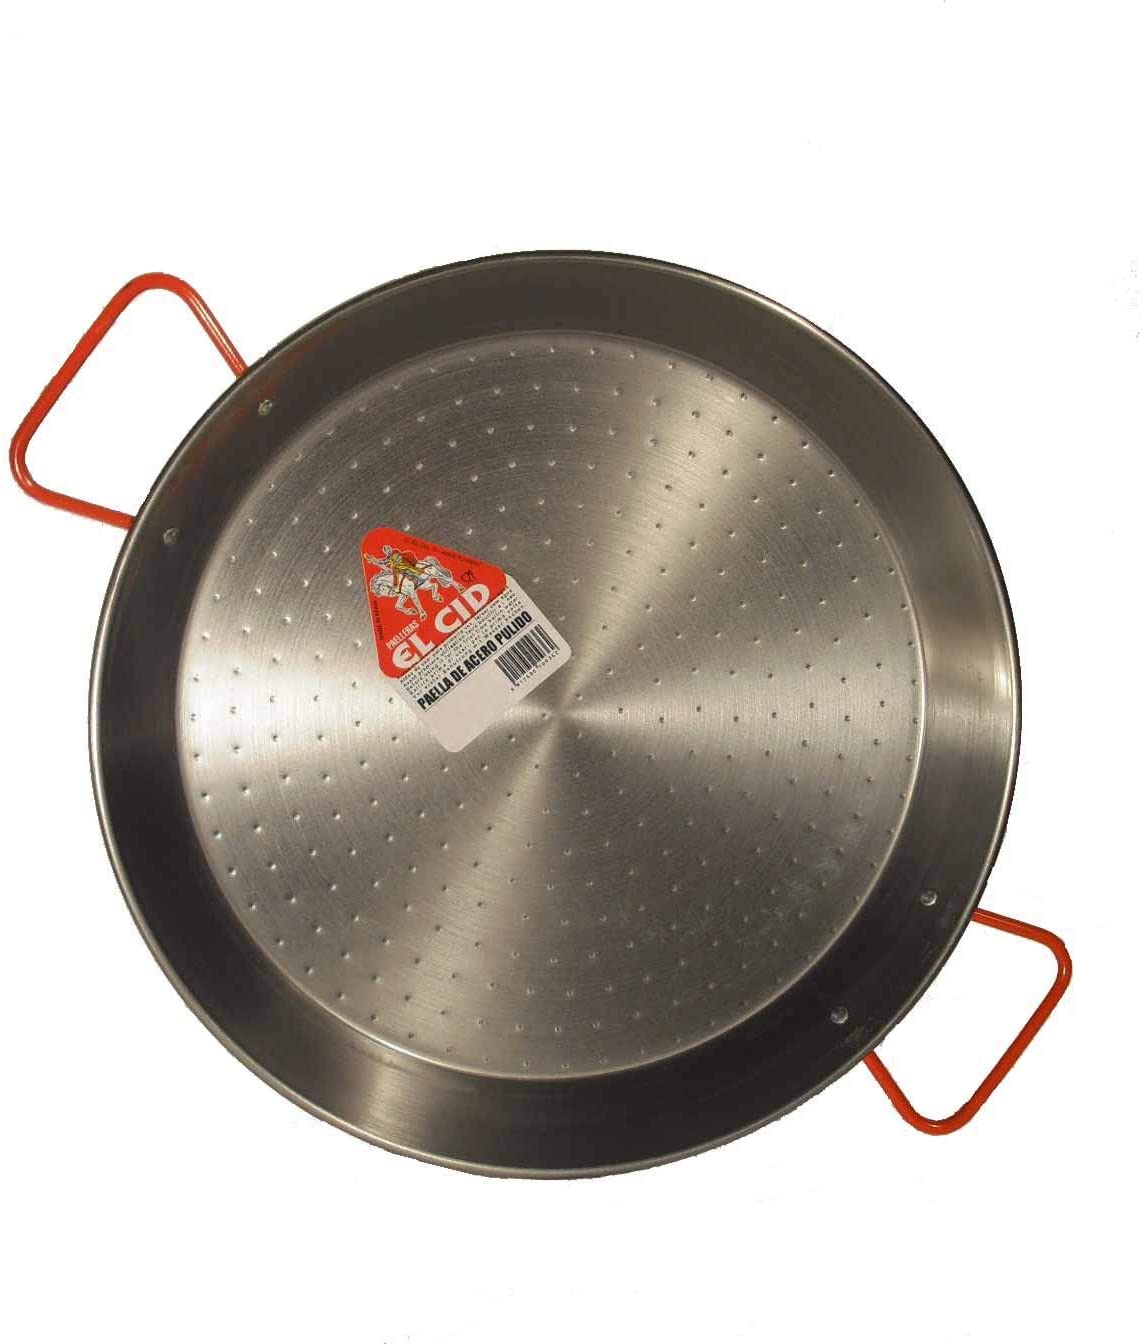 Garcima 20-inch Enameled Steel Paella Pan, 50cm